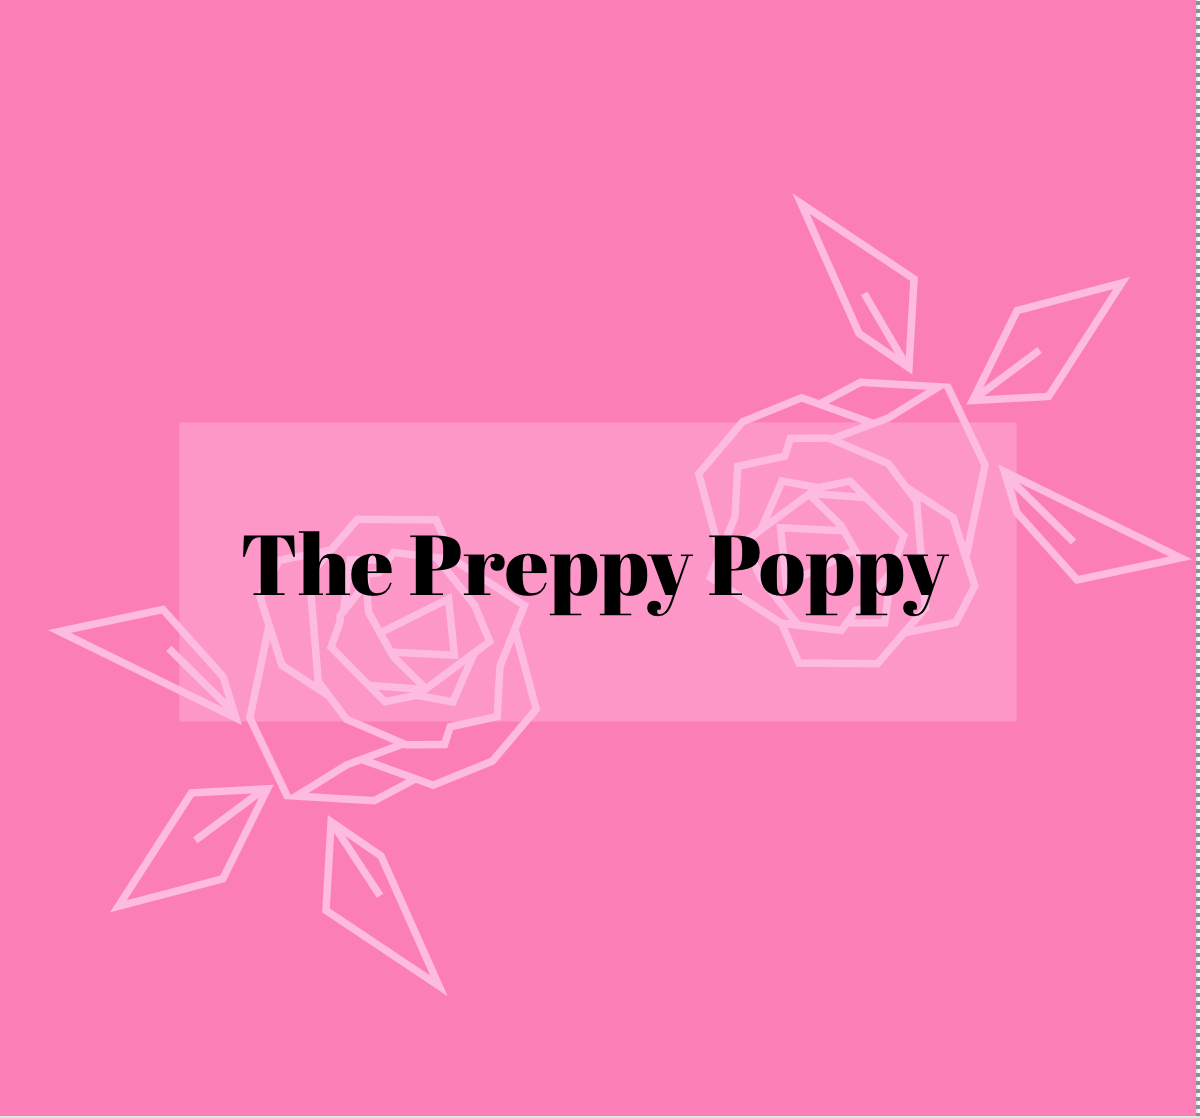 The Preppy Poppy